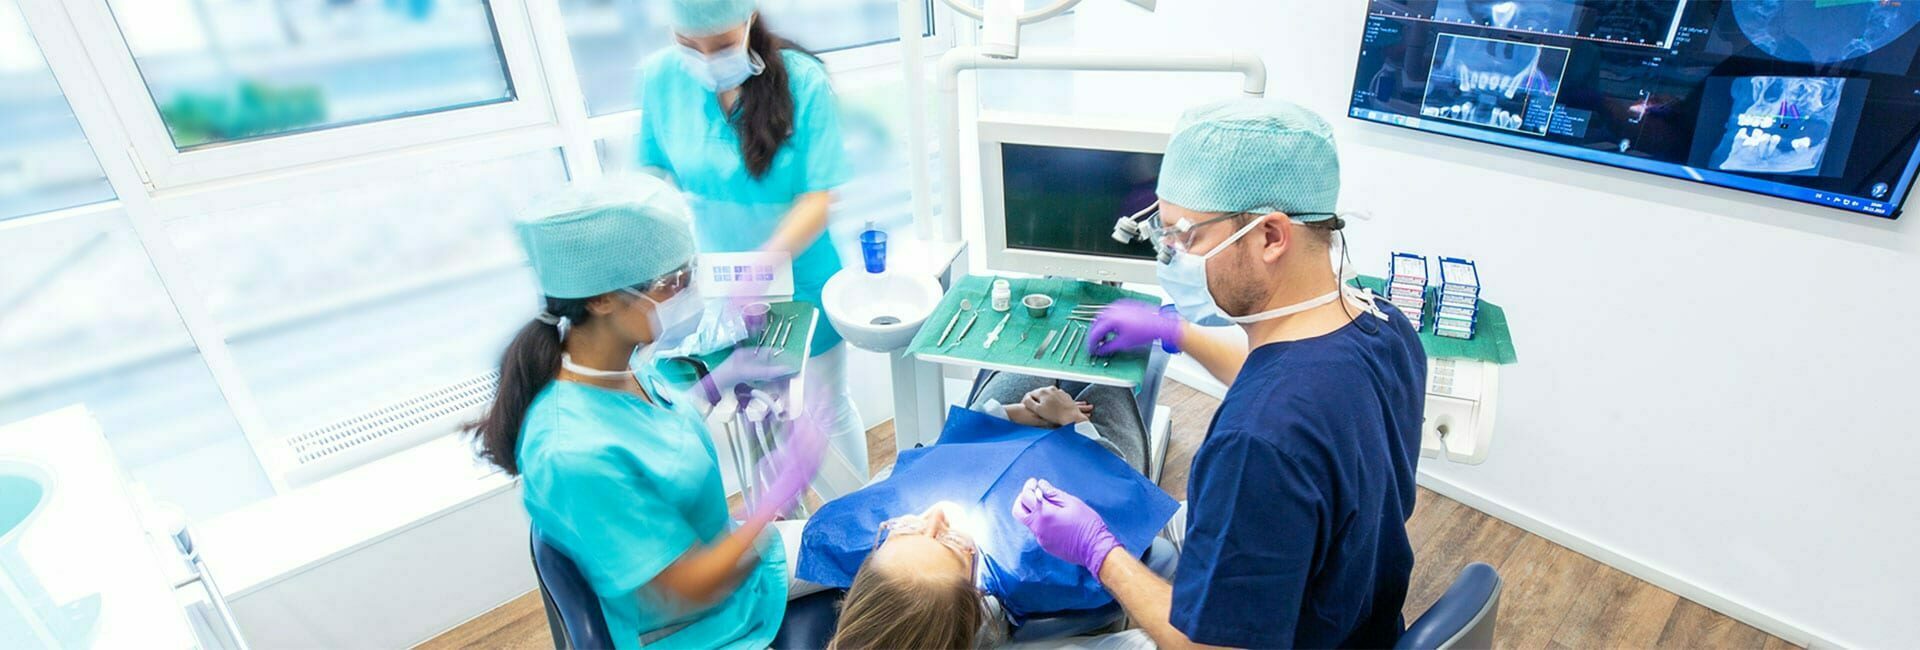 Bone reconstruction - Dental implantation | Dr. HAGER